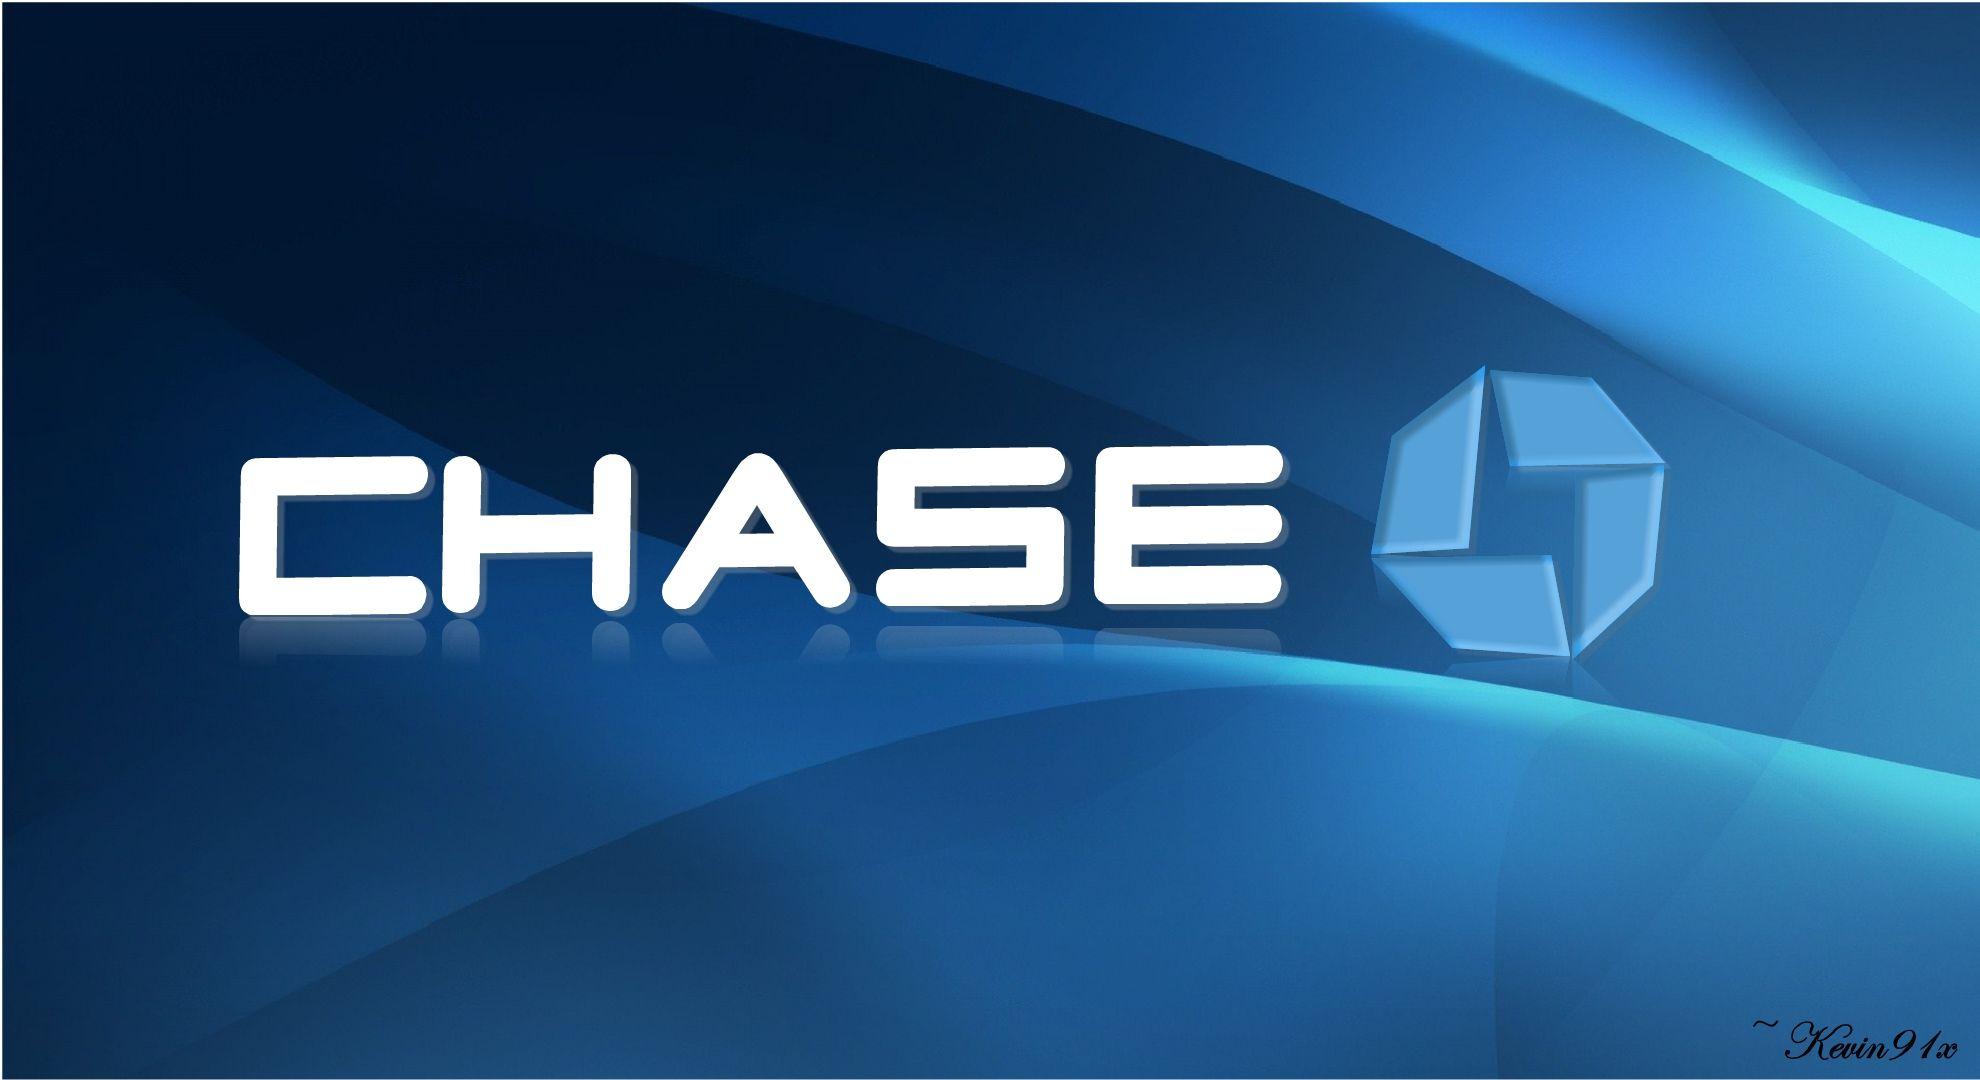 Chase Logo - Chase bank Logos